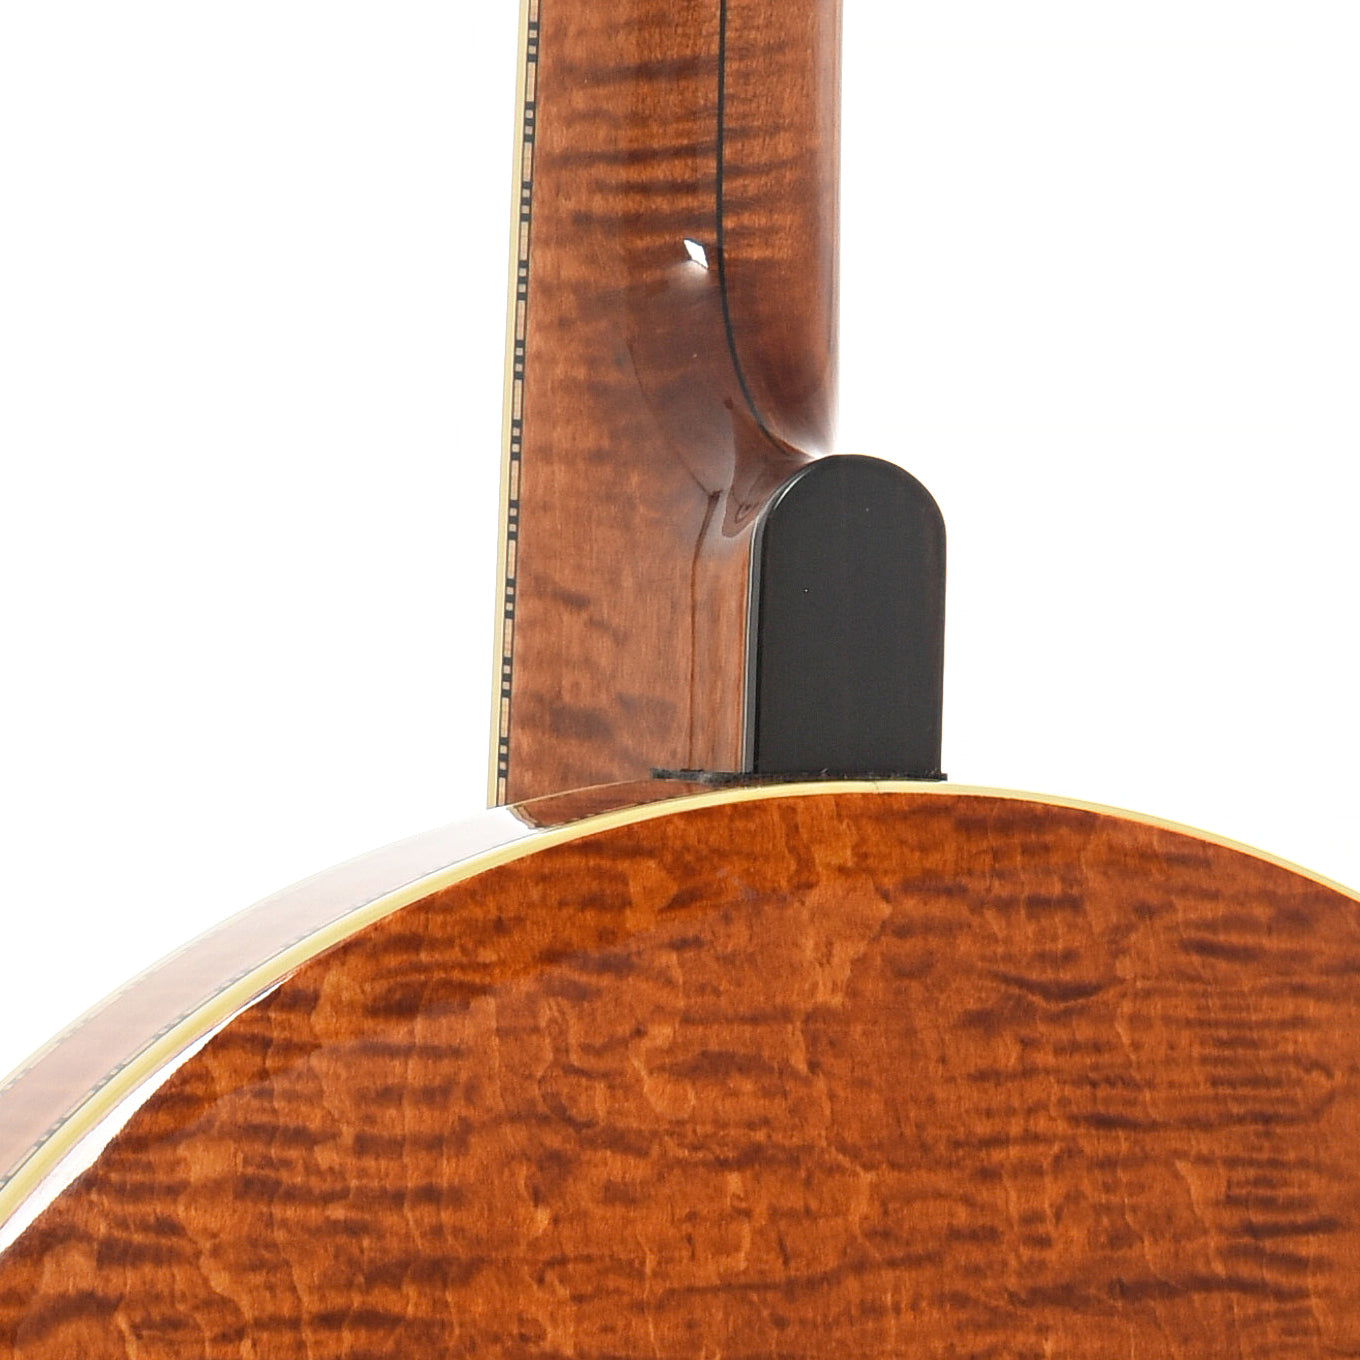 Heel of Wildwood Heirloom Resonator Banjo